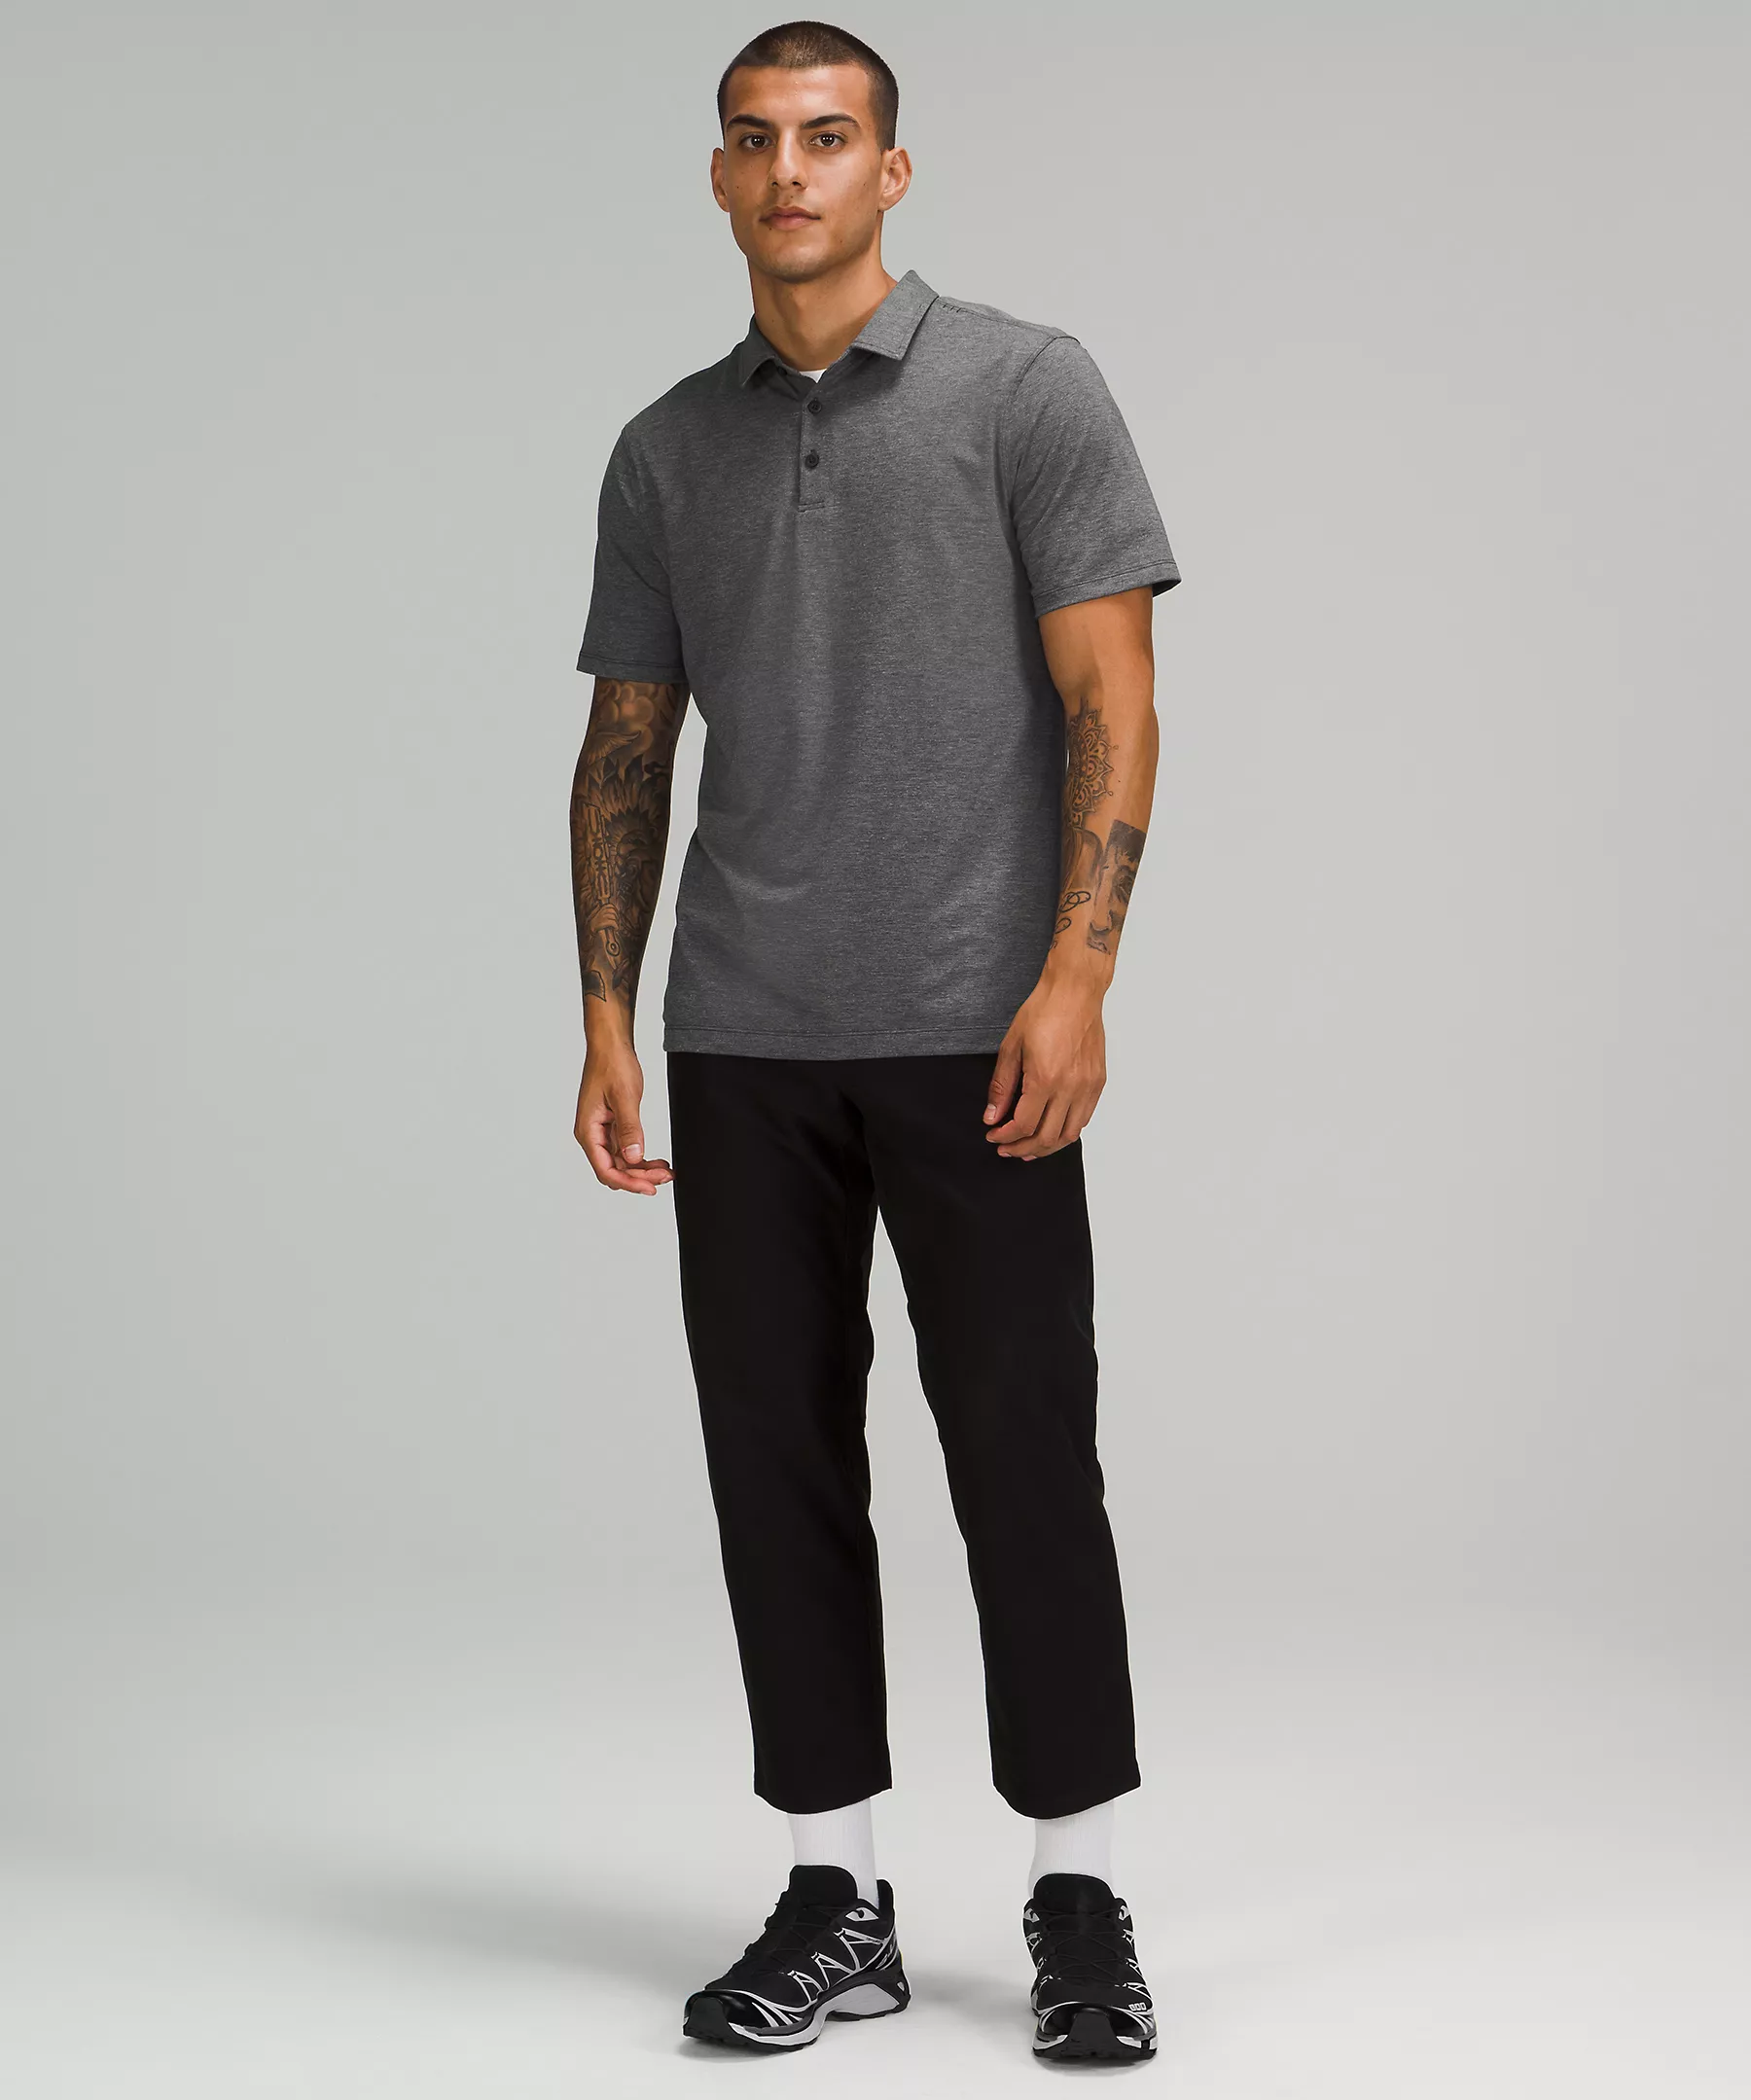 shop.lululemon.com | Evolution Short Sleeve Polo Shirt Pique Fabric